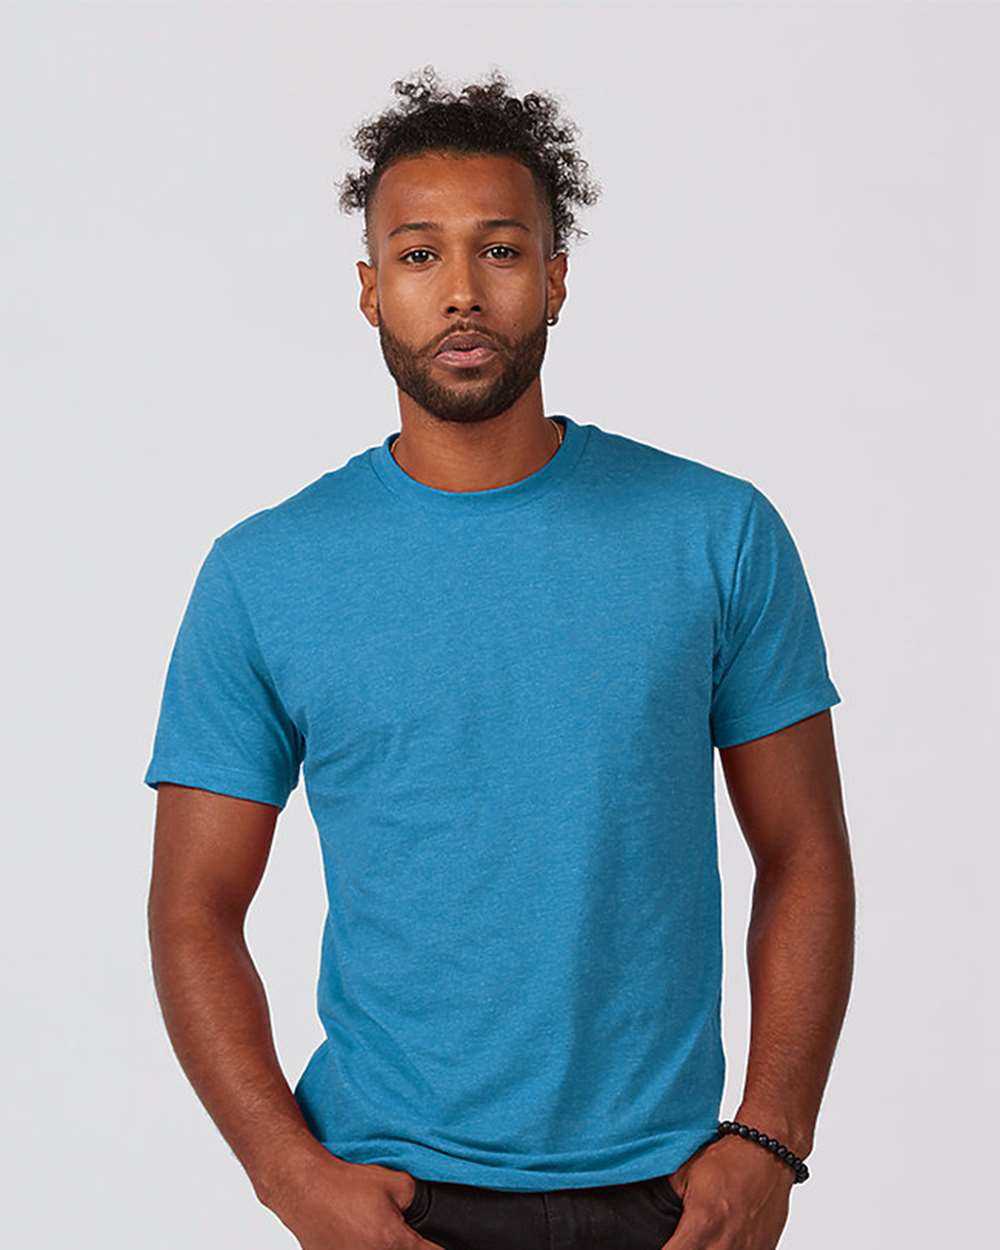 Tultex 541 Unisex Premium Cotton Blend T-Shirt - Turquoise Heather - HIT a Double